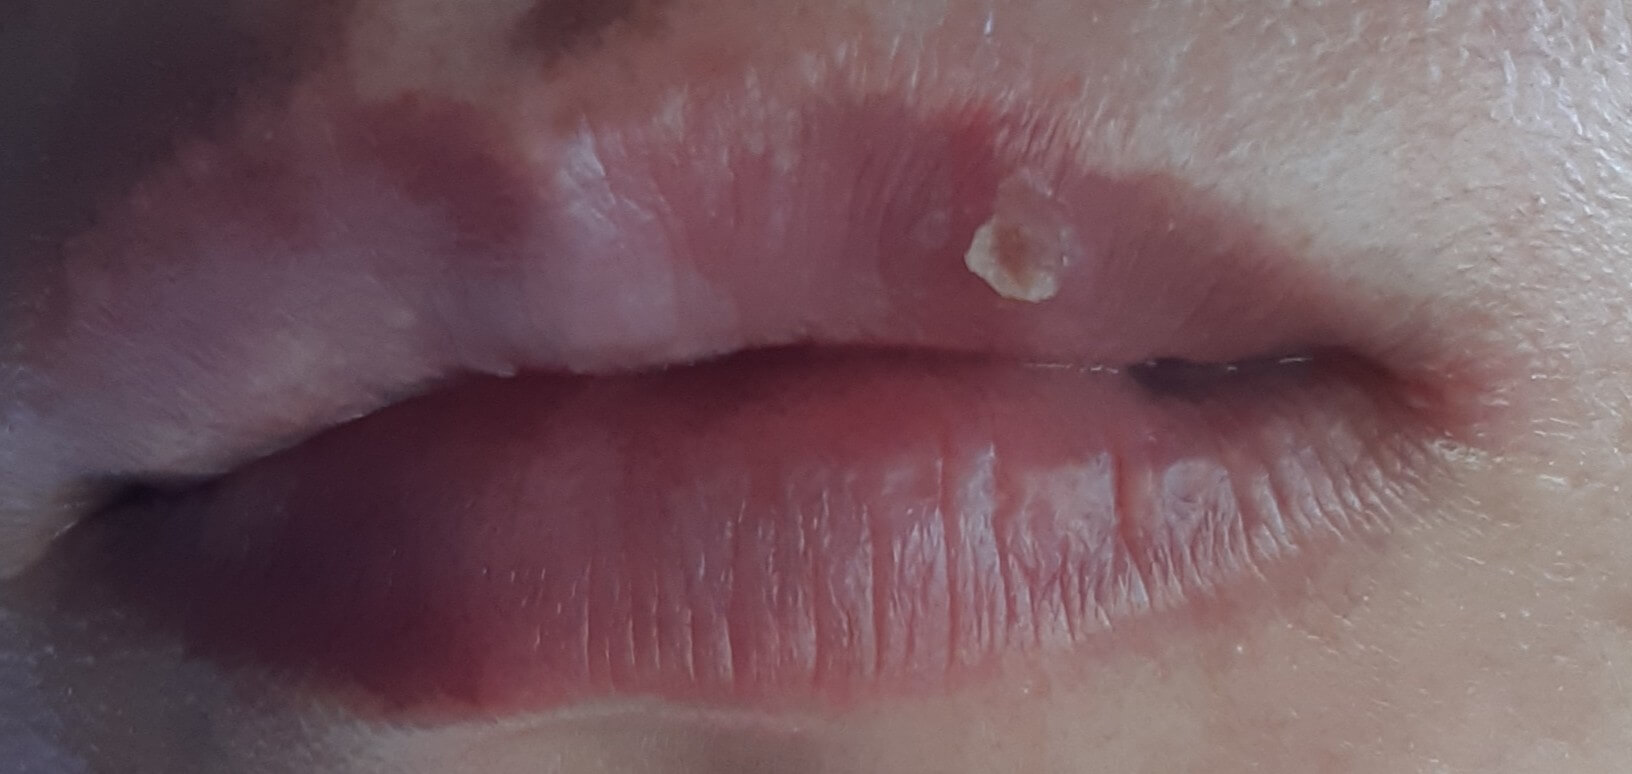 입술 왼쪽 끝 구각염 발생